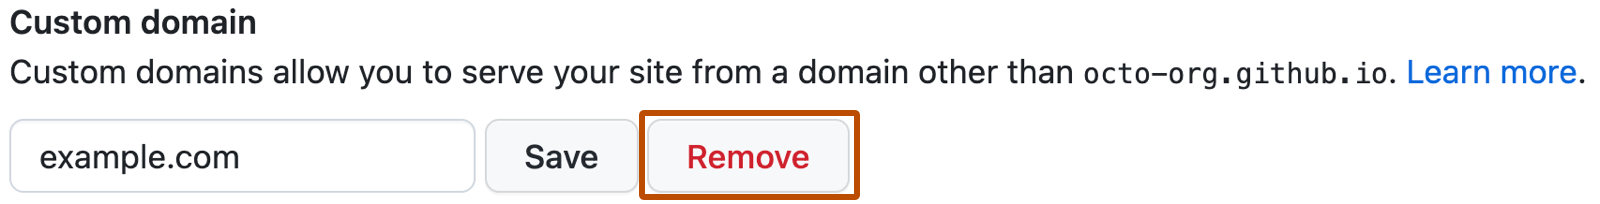 Снимок экрана: поле параметров для сохранения или удаления личного домена на GitHub Pages . Справа от текстового поля с надписью "example.com" является кнопка с надписью "Удалить" в красном типе.